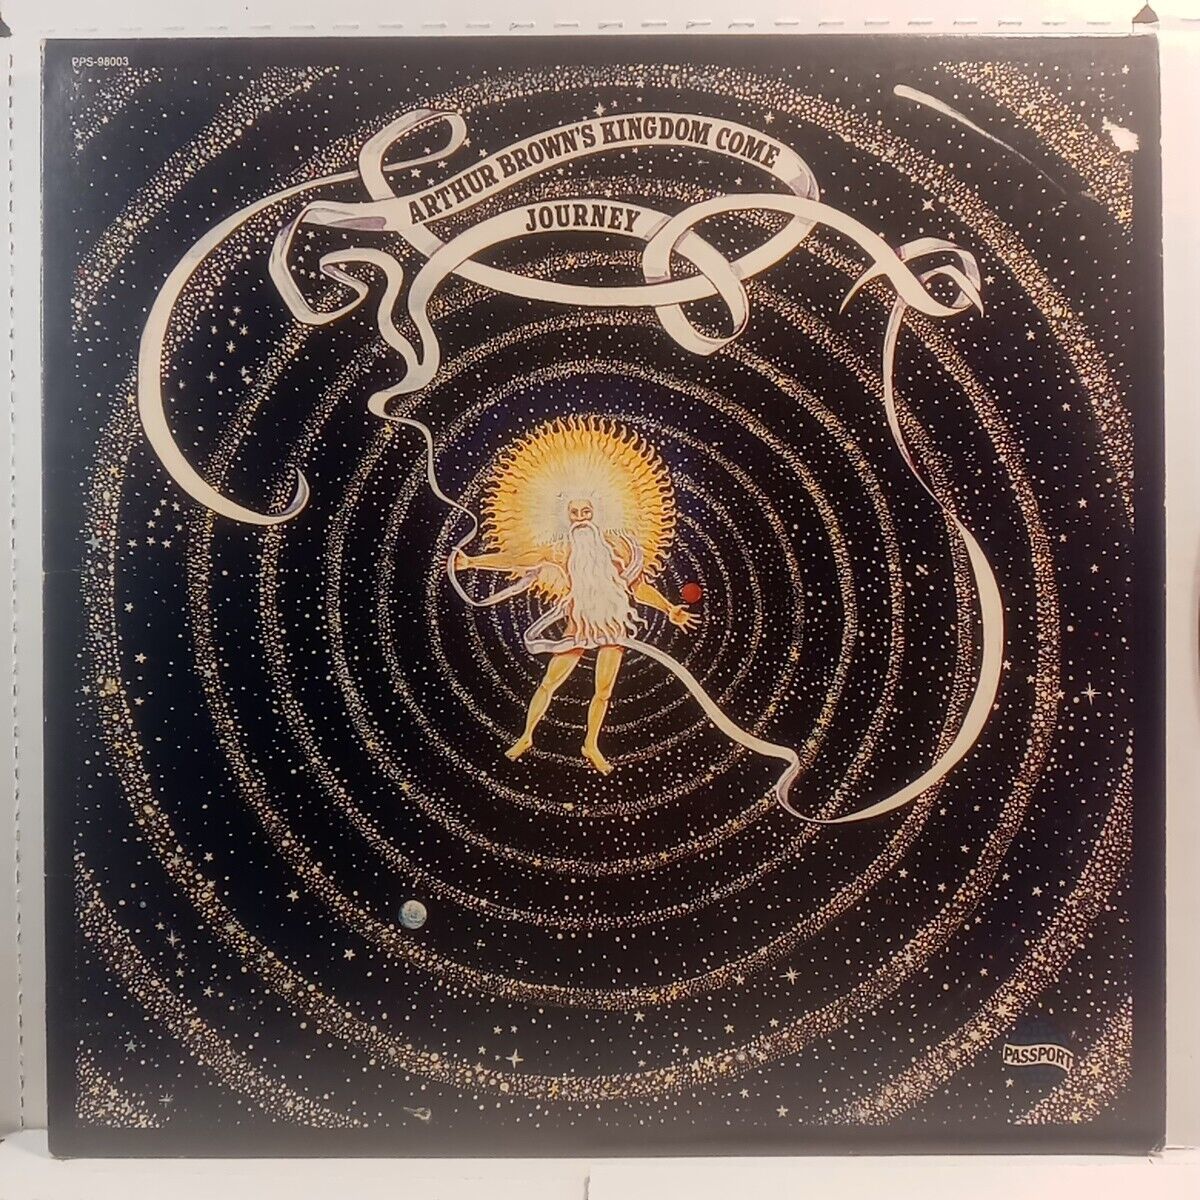 Arthur Brown's Kingdom Come – Journey    Vinyl LP42